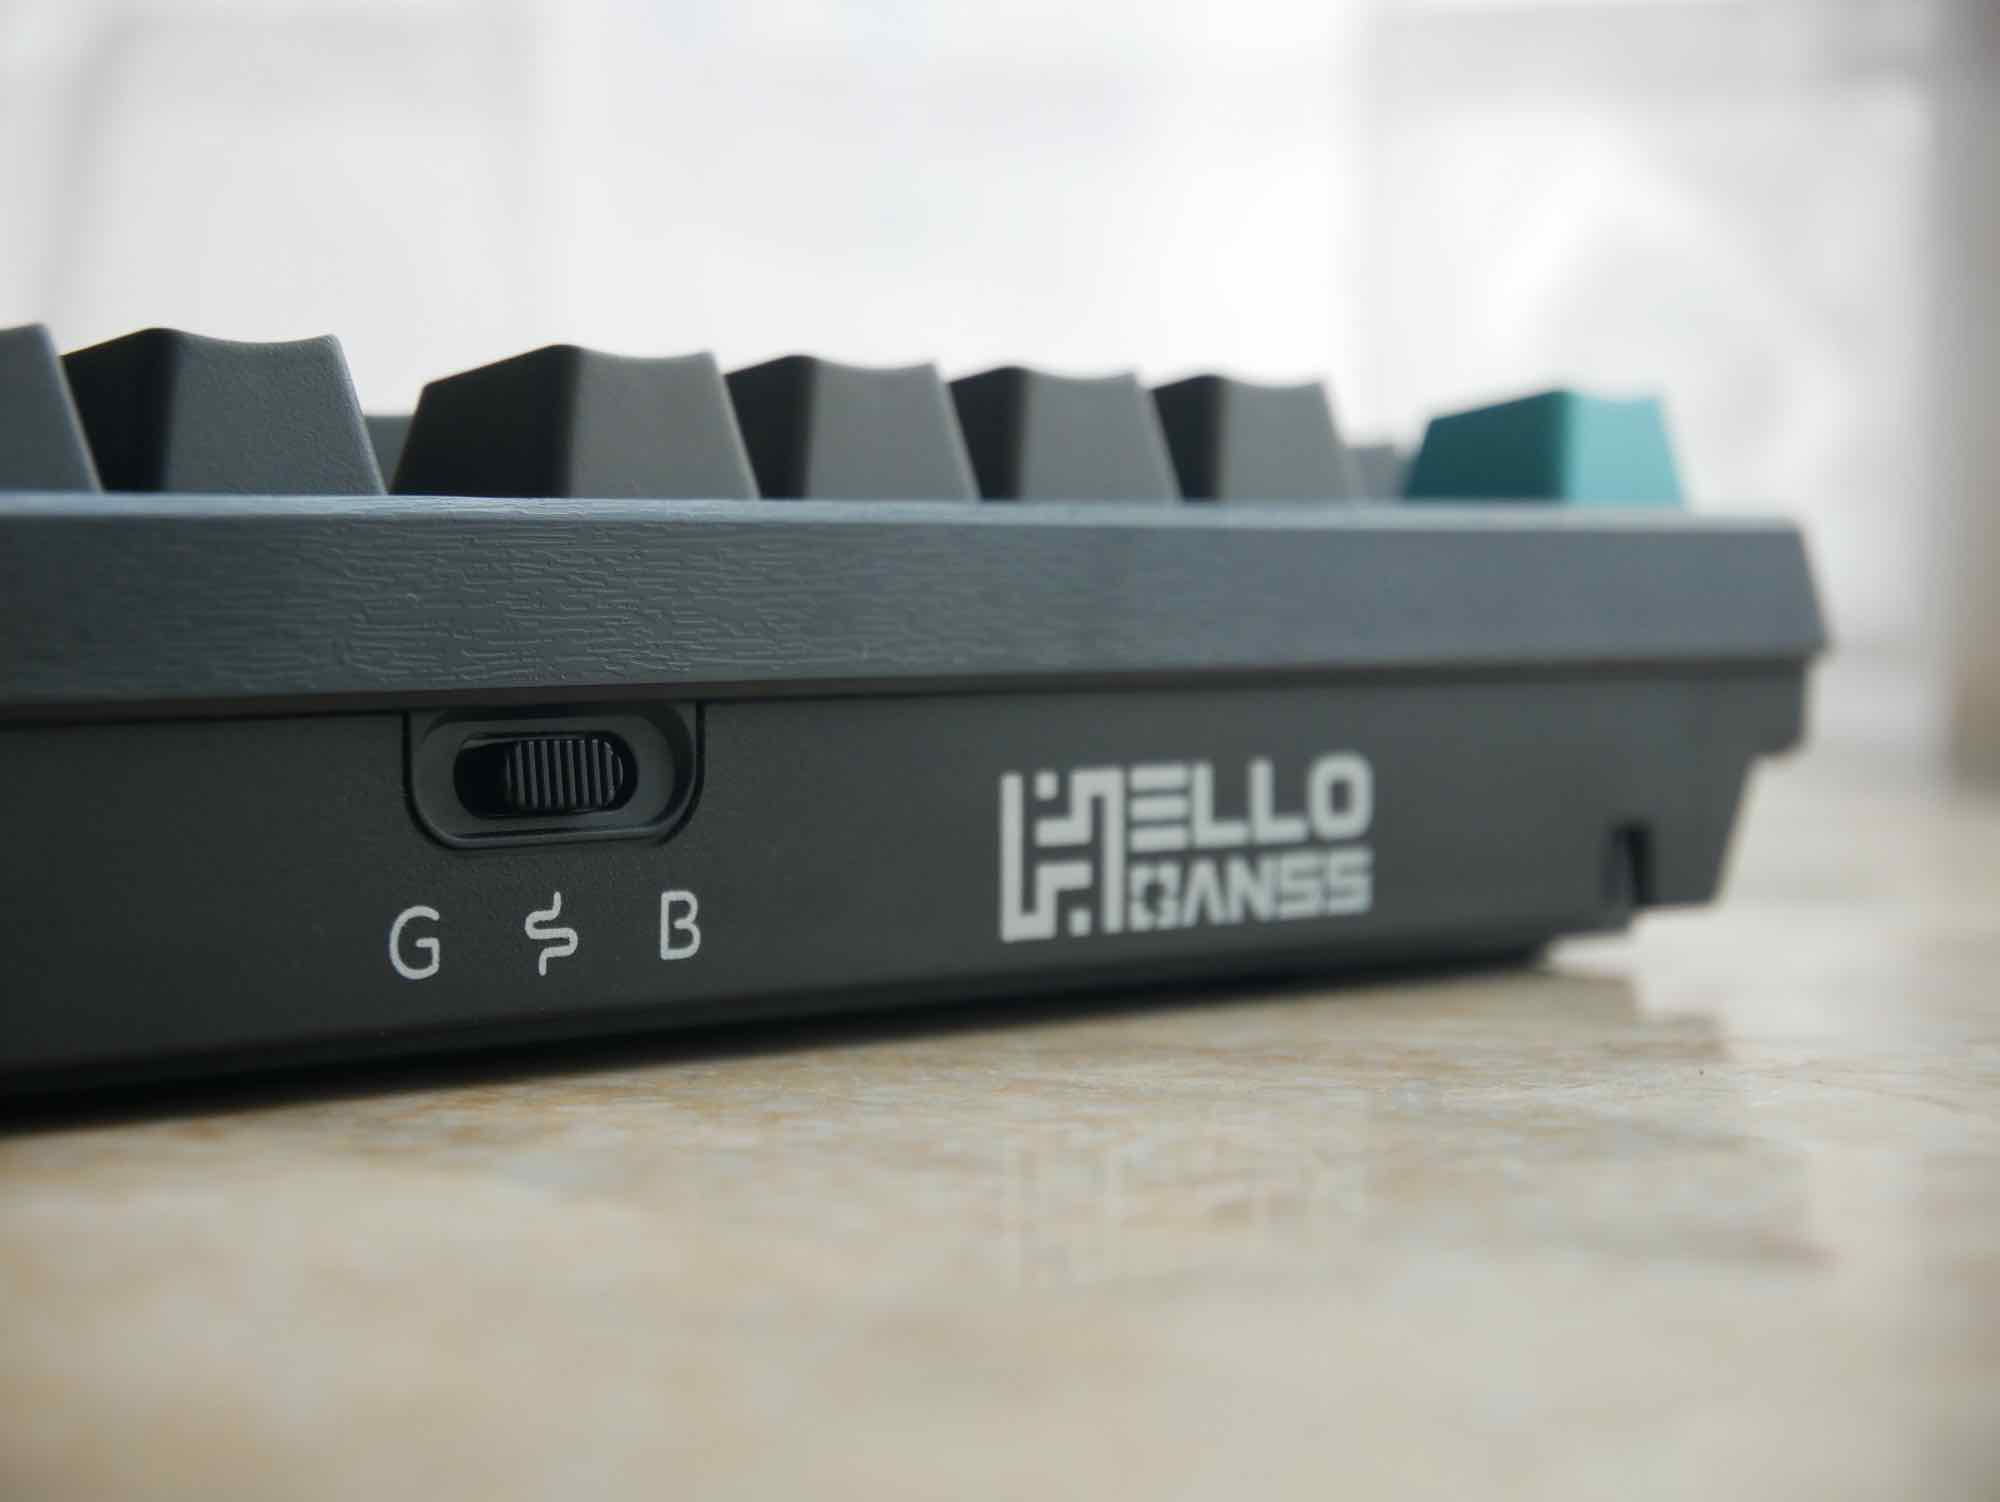 说不完整，但好像又完整了——HELLO GANSS HS 98T三模键盘